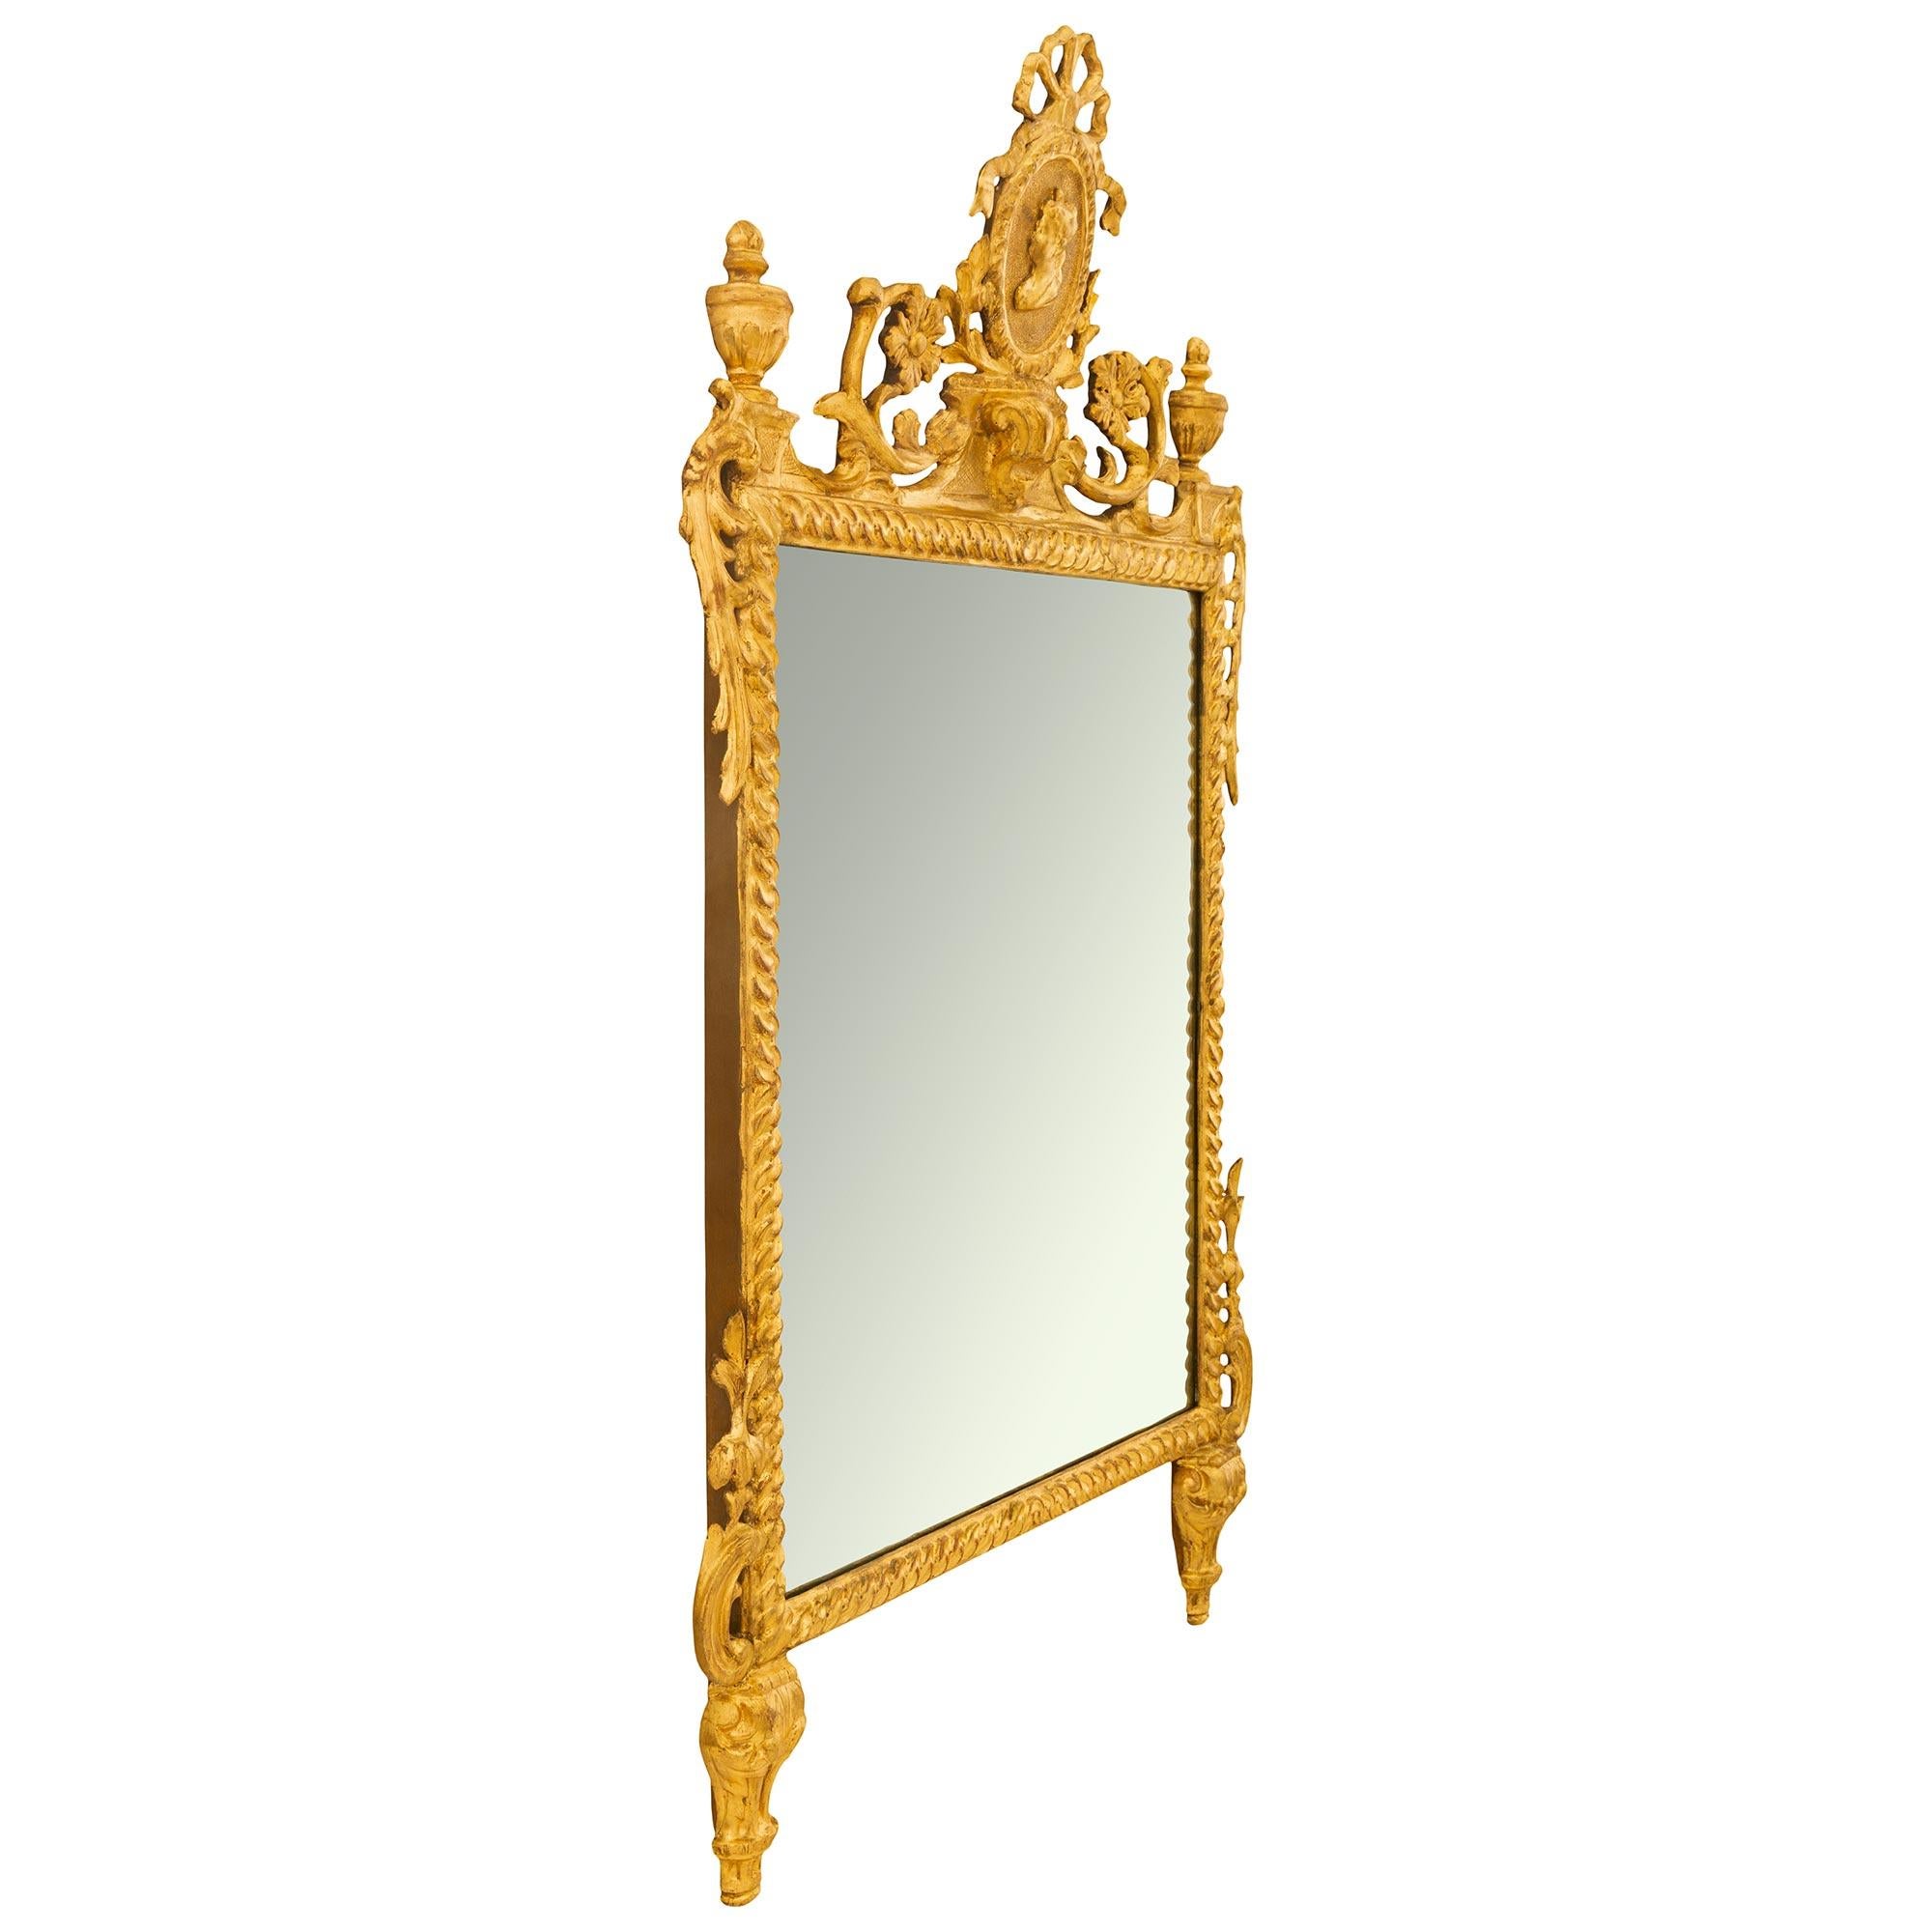 Ein eleganter italienischer Giltwood-Spiegel aus dem 18. Jahrhundert im Stil Louis XVI. Der Spiegel mit seiner gesamten originalen Spiegelplatte und Vergoldung wird von zwei Stützen mit Akanthusblättern getragen. Der rechteckige Rahmen mit